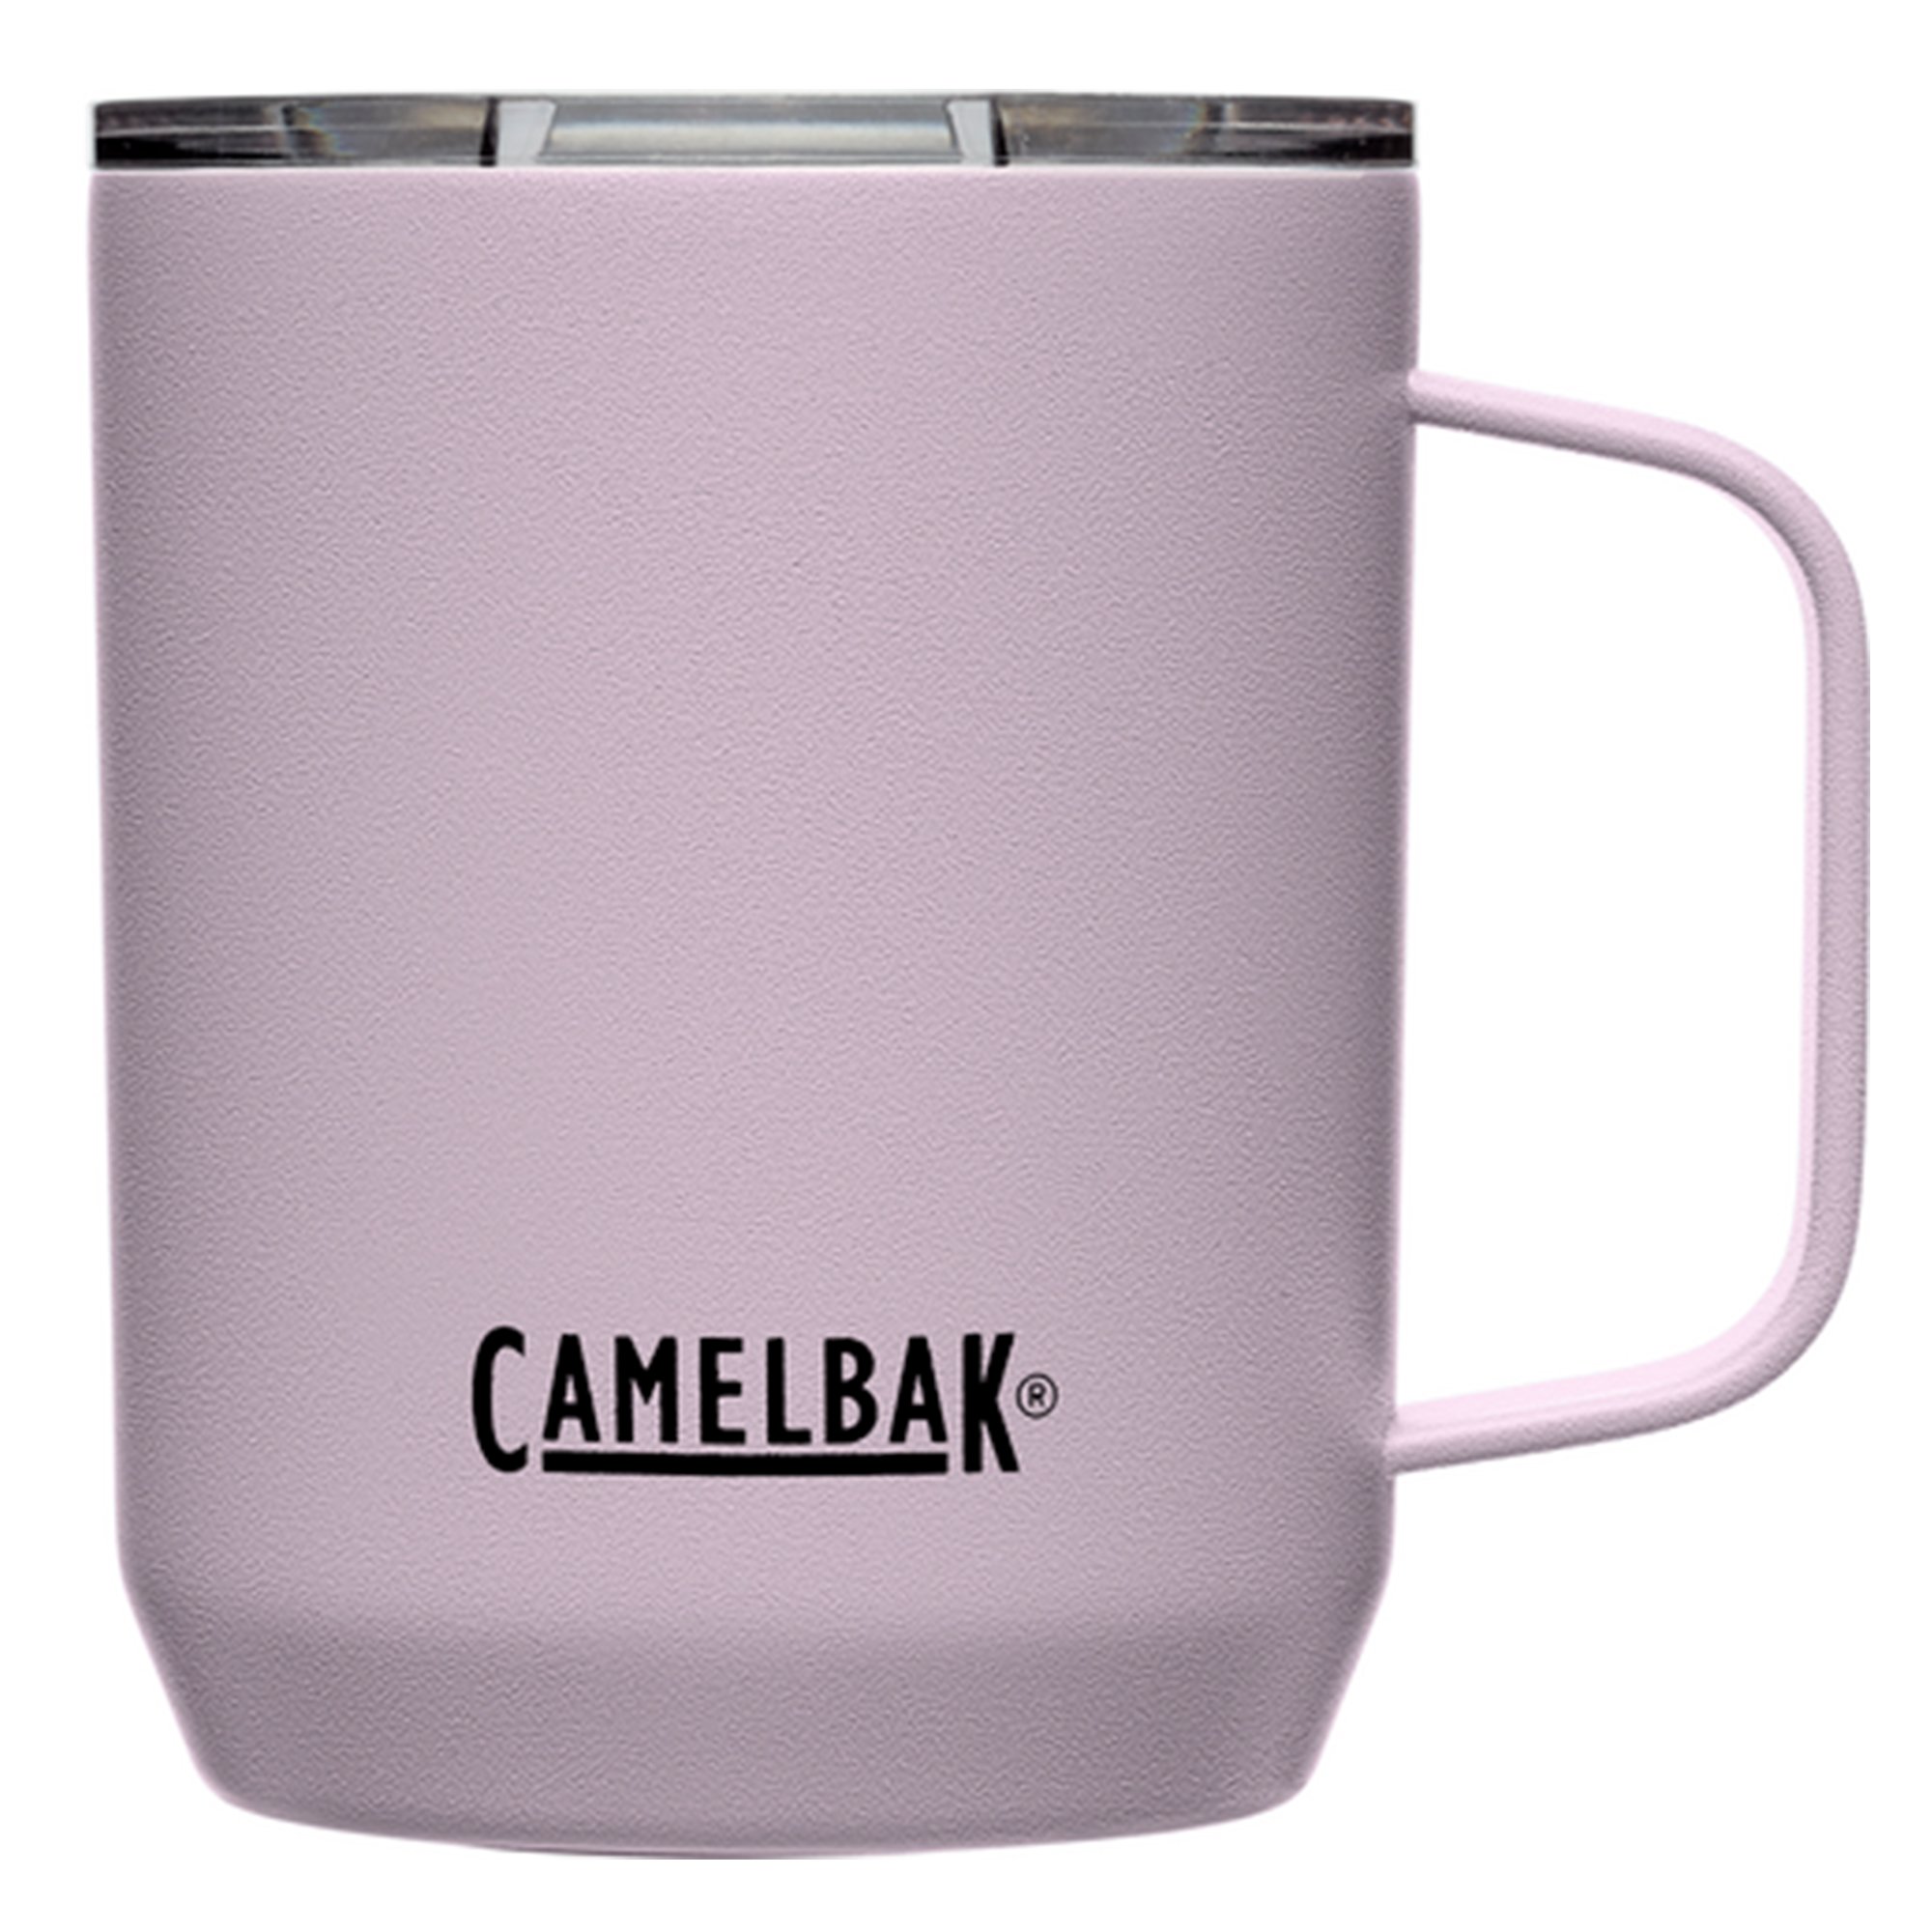 Camelbak Termokrus 0,35 liter, purple sky